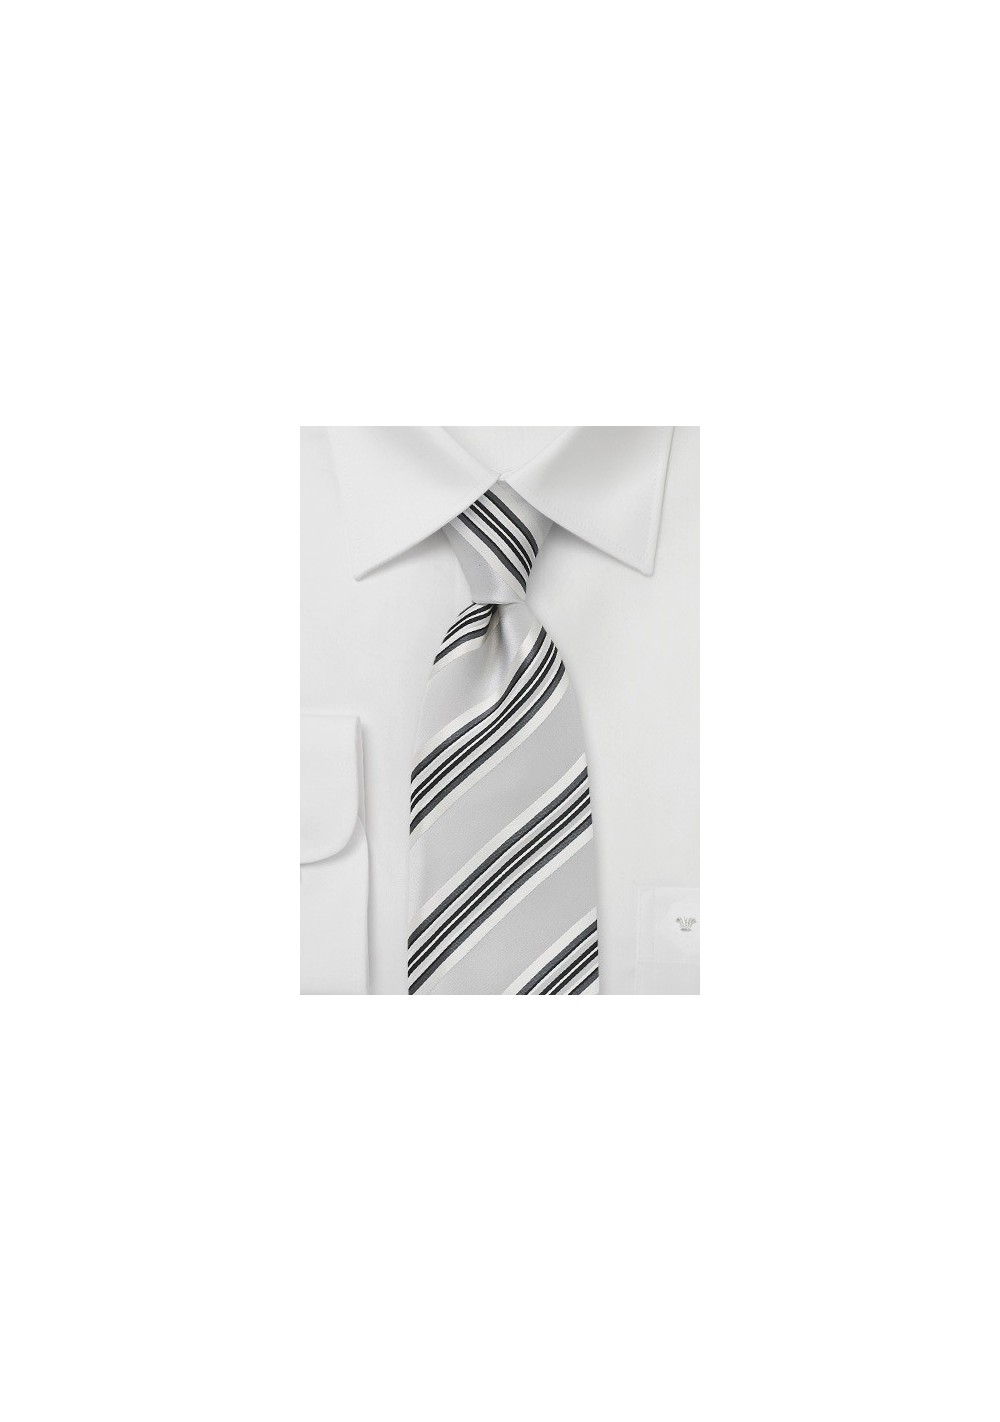 Striped Tie in Soft Silver